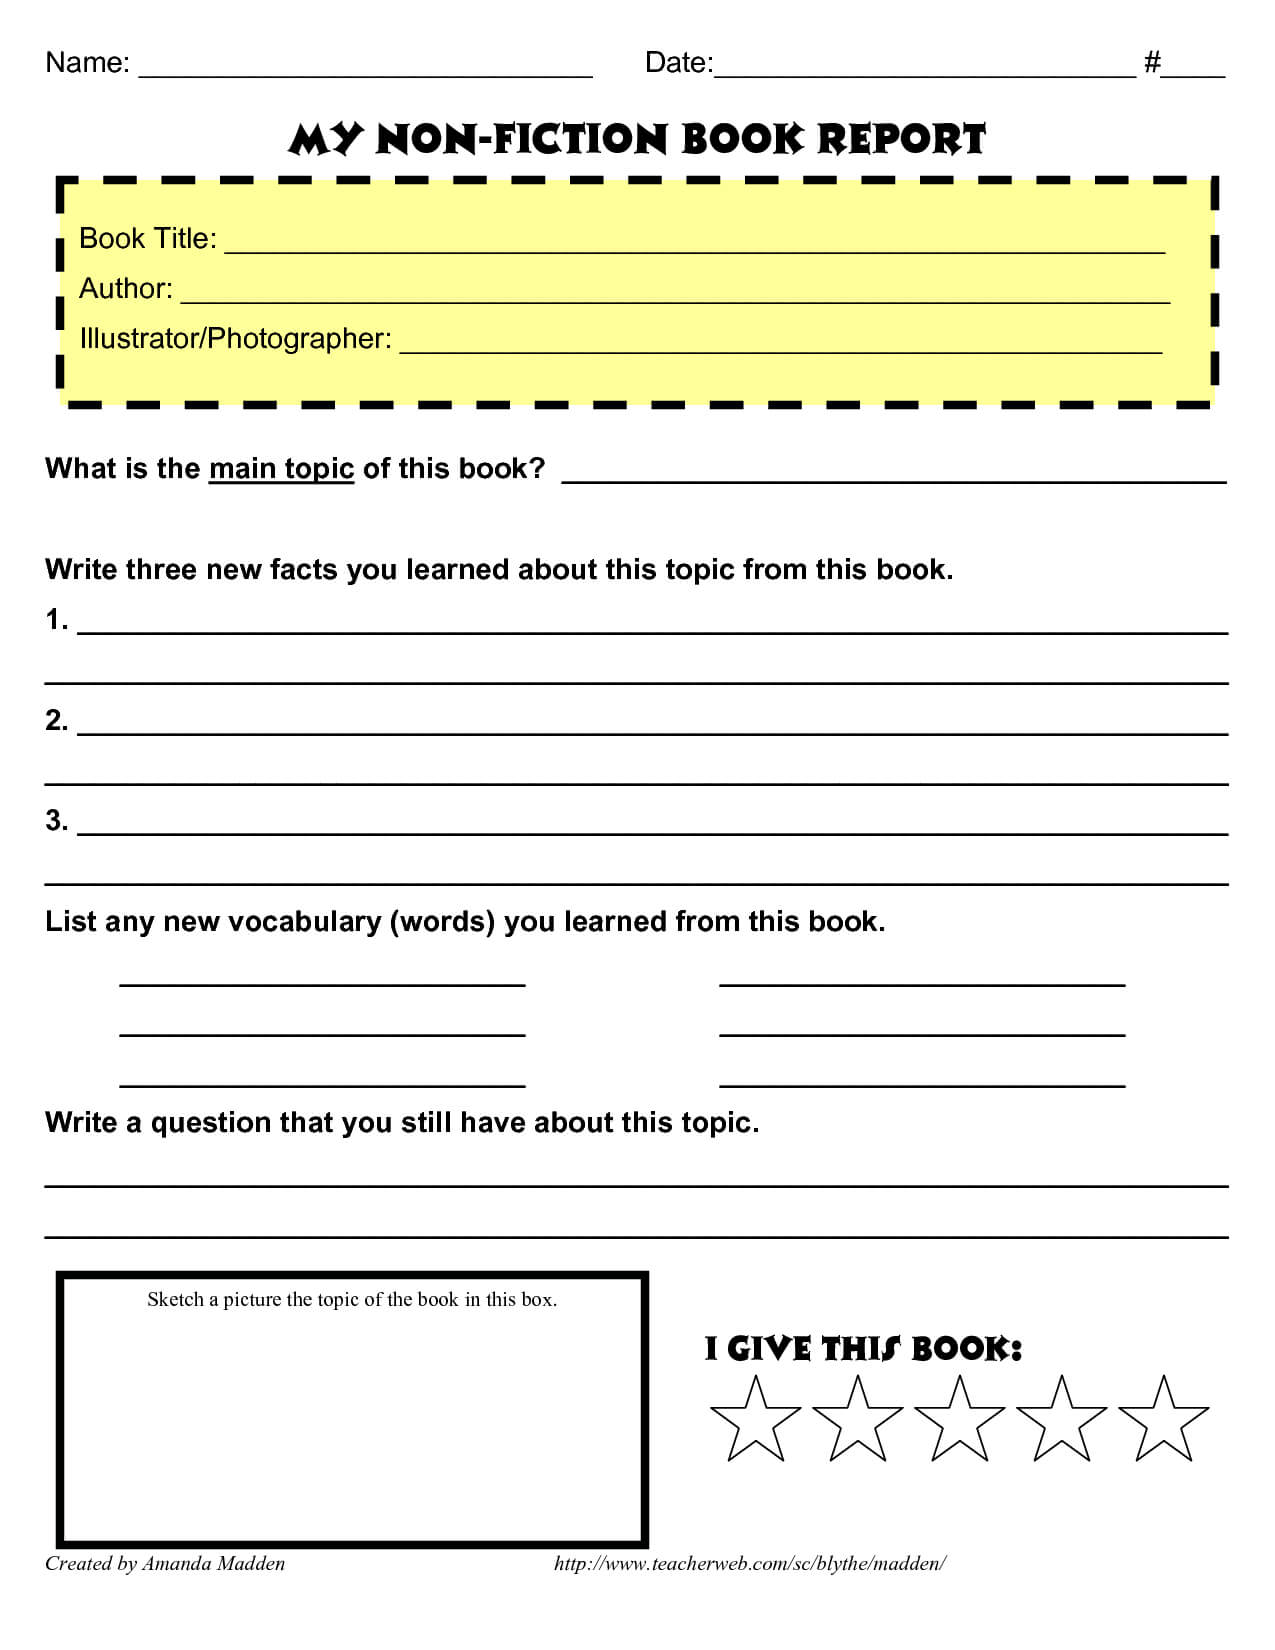 Grade 4 Book Report Template Non Fiction | Book Report Intended For Nonfiction Book Report Template